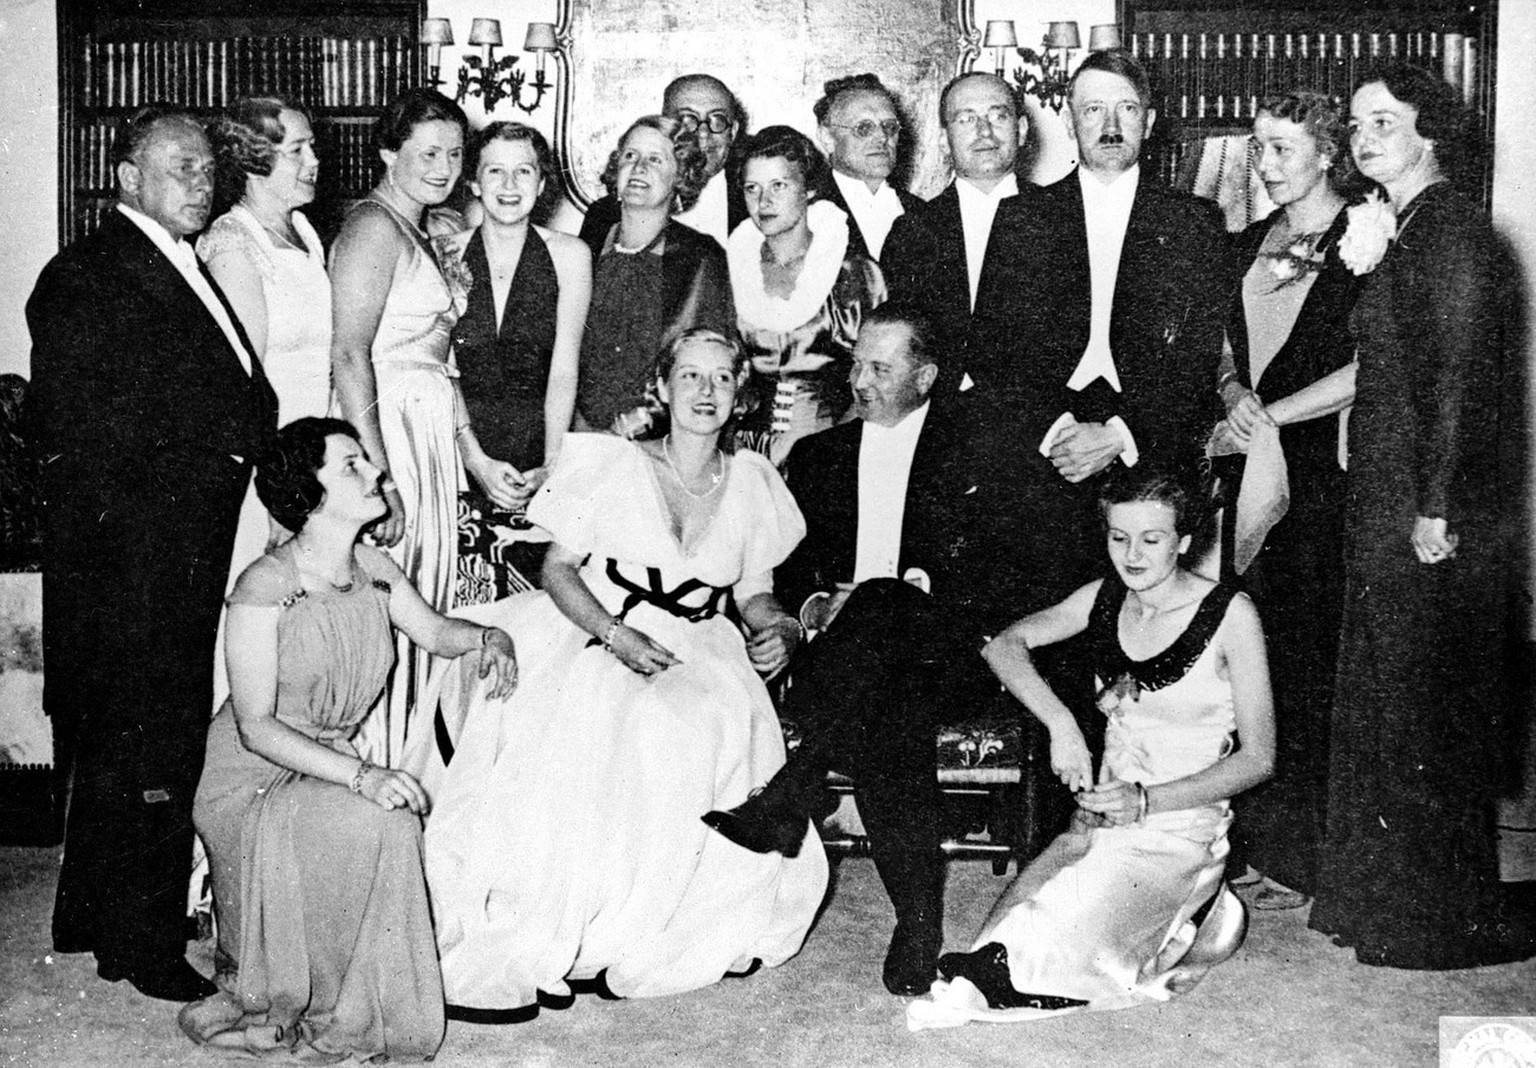 Hitler mit Eva Braun (vor ihm kniend) auf einem undatierten Foto.